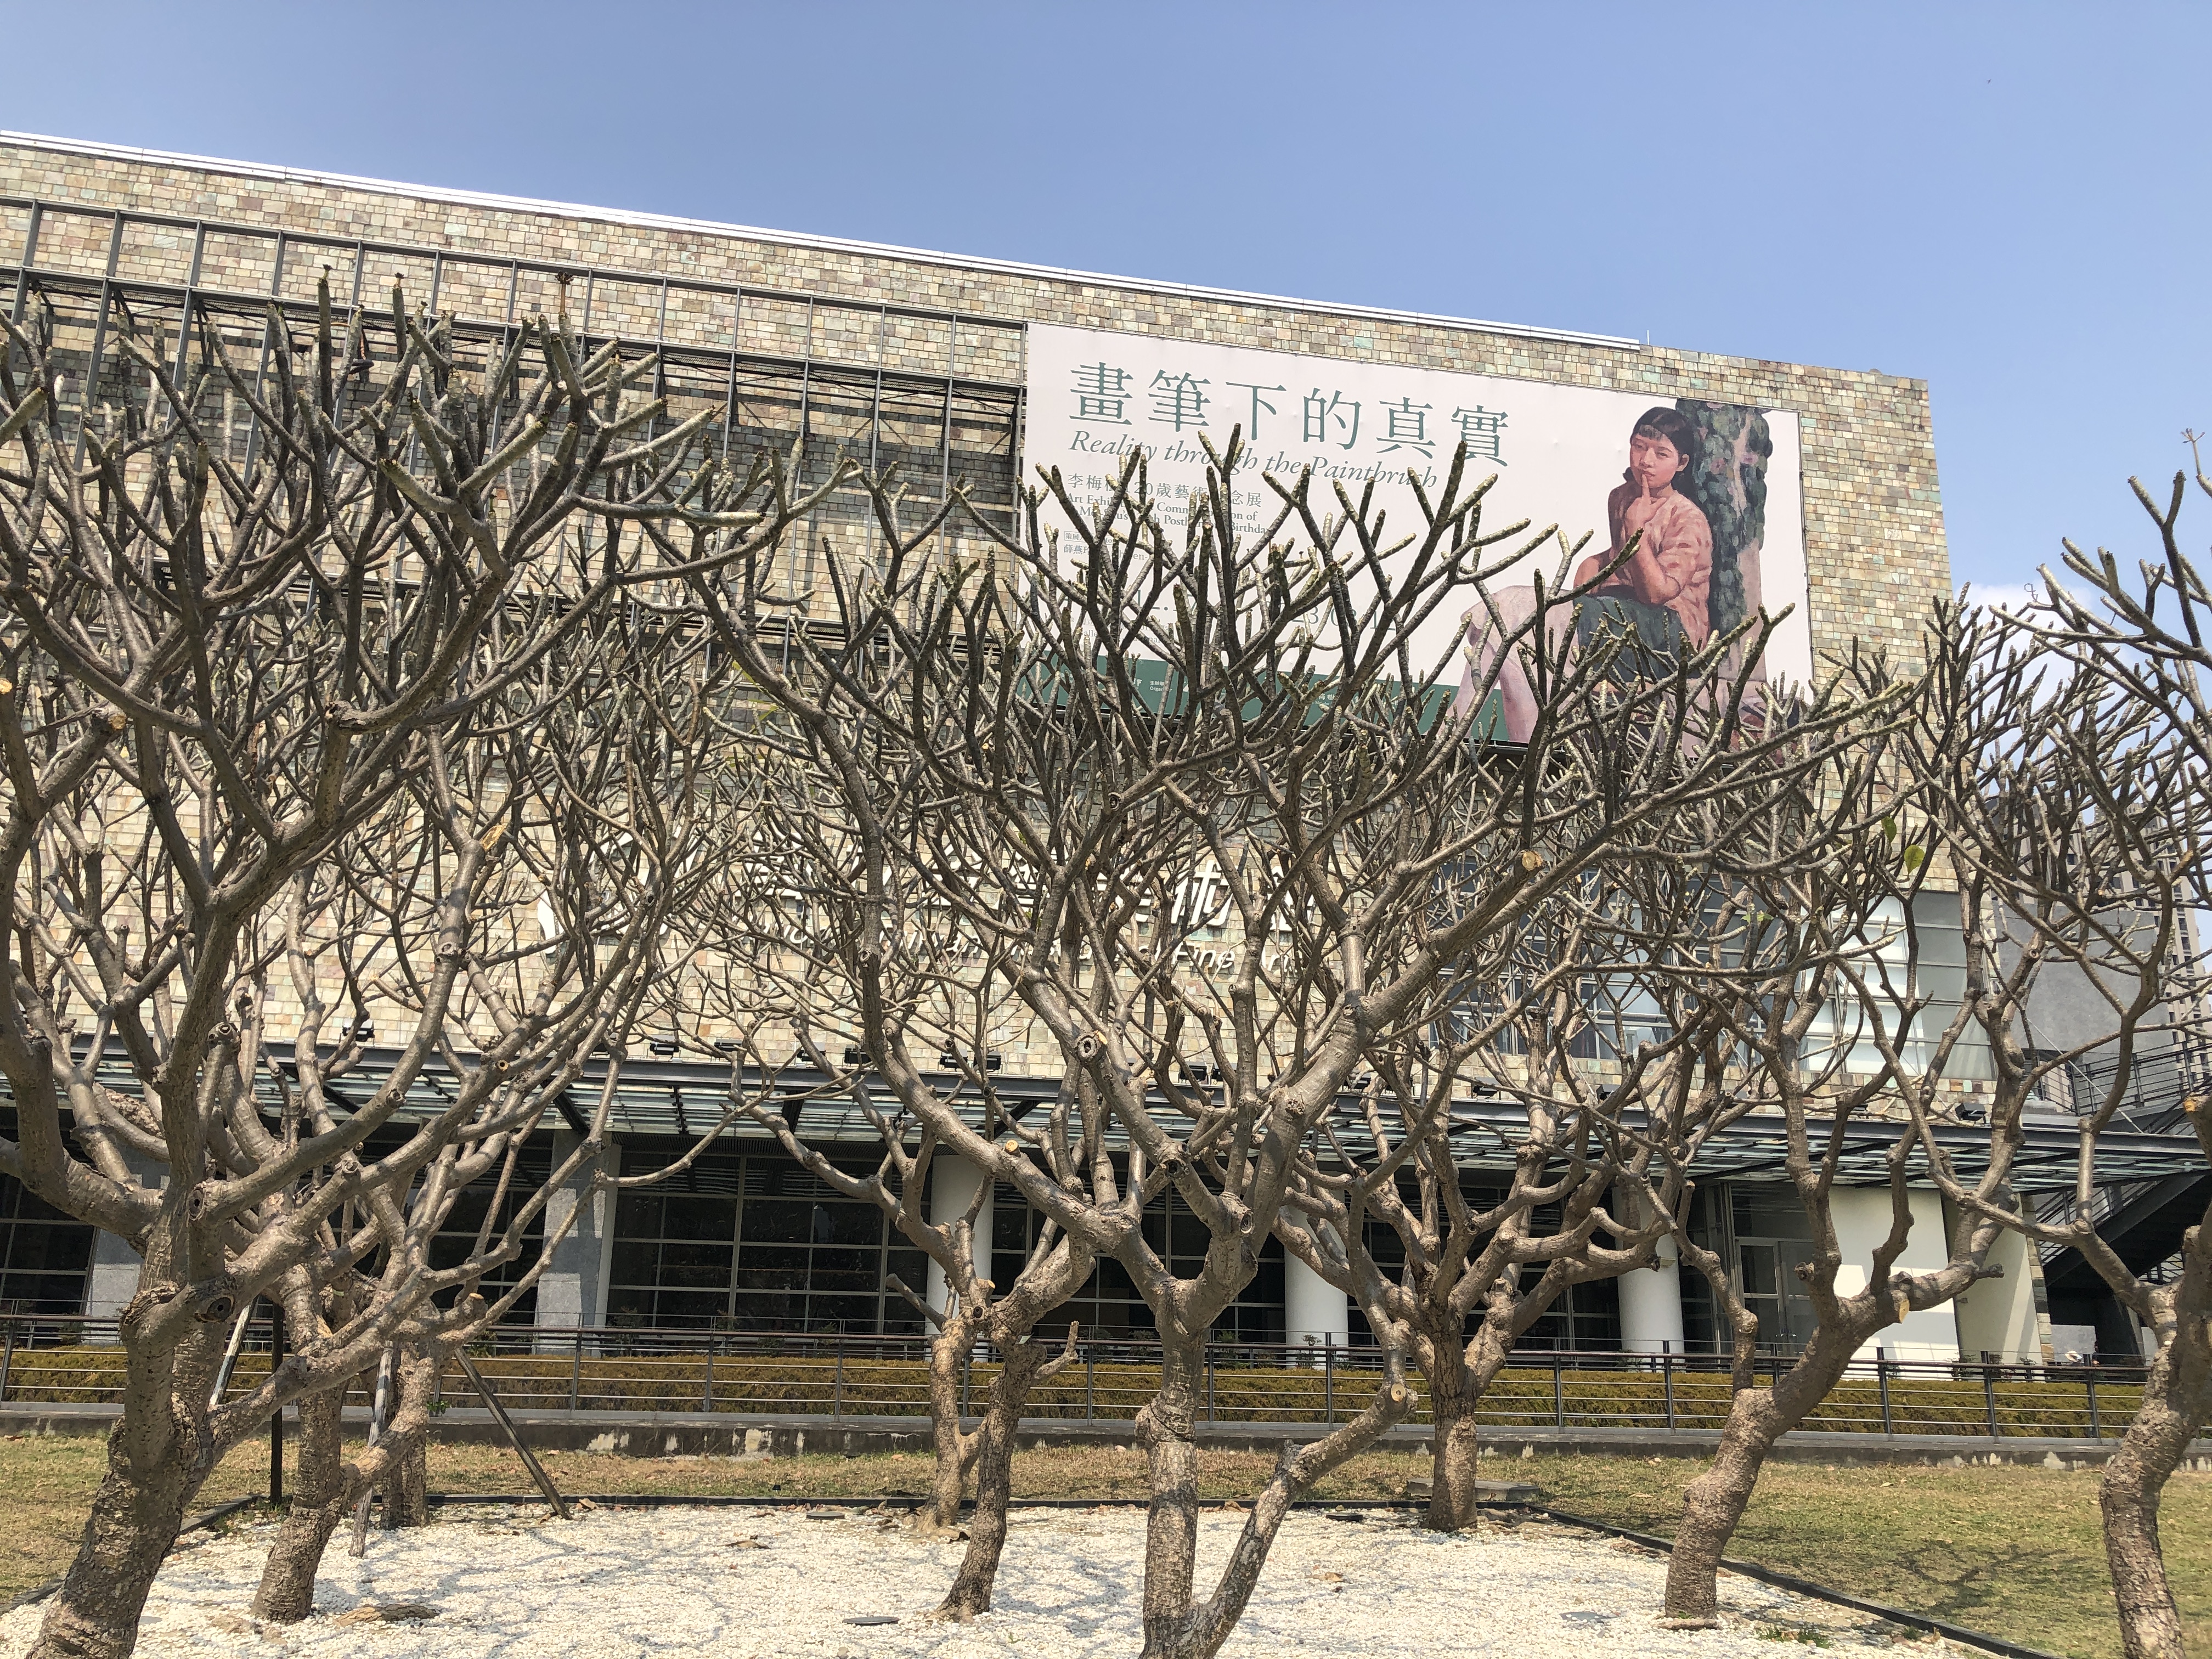 国立台湾美术馆是全台除故宫外唯一国立美术馆，偌大三层楼馆内左右两边常同时举行四、五档展览，是民众看展好去处。记者何定照／摄影